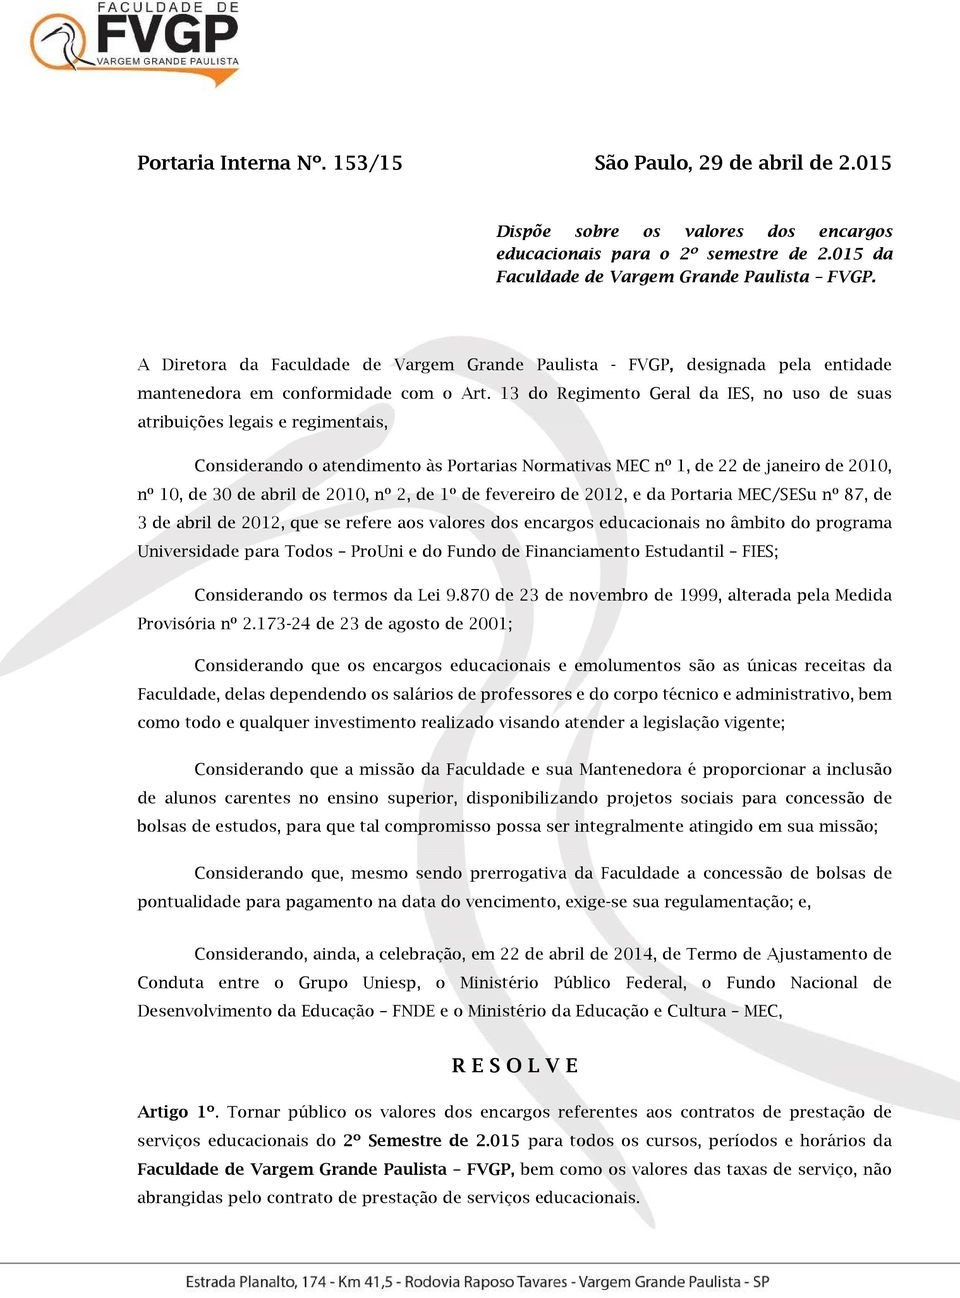 13 do Regimento Geral da IES, no uso de suas atribuições legais e regimentais, Considerando o atendimento às Portarias Normativas MEC nº 1, de 22 de janeiro de 2010, nº 10, de 30 de abril de 2010, nº